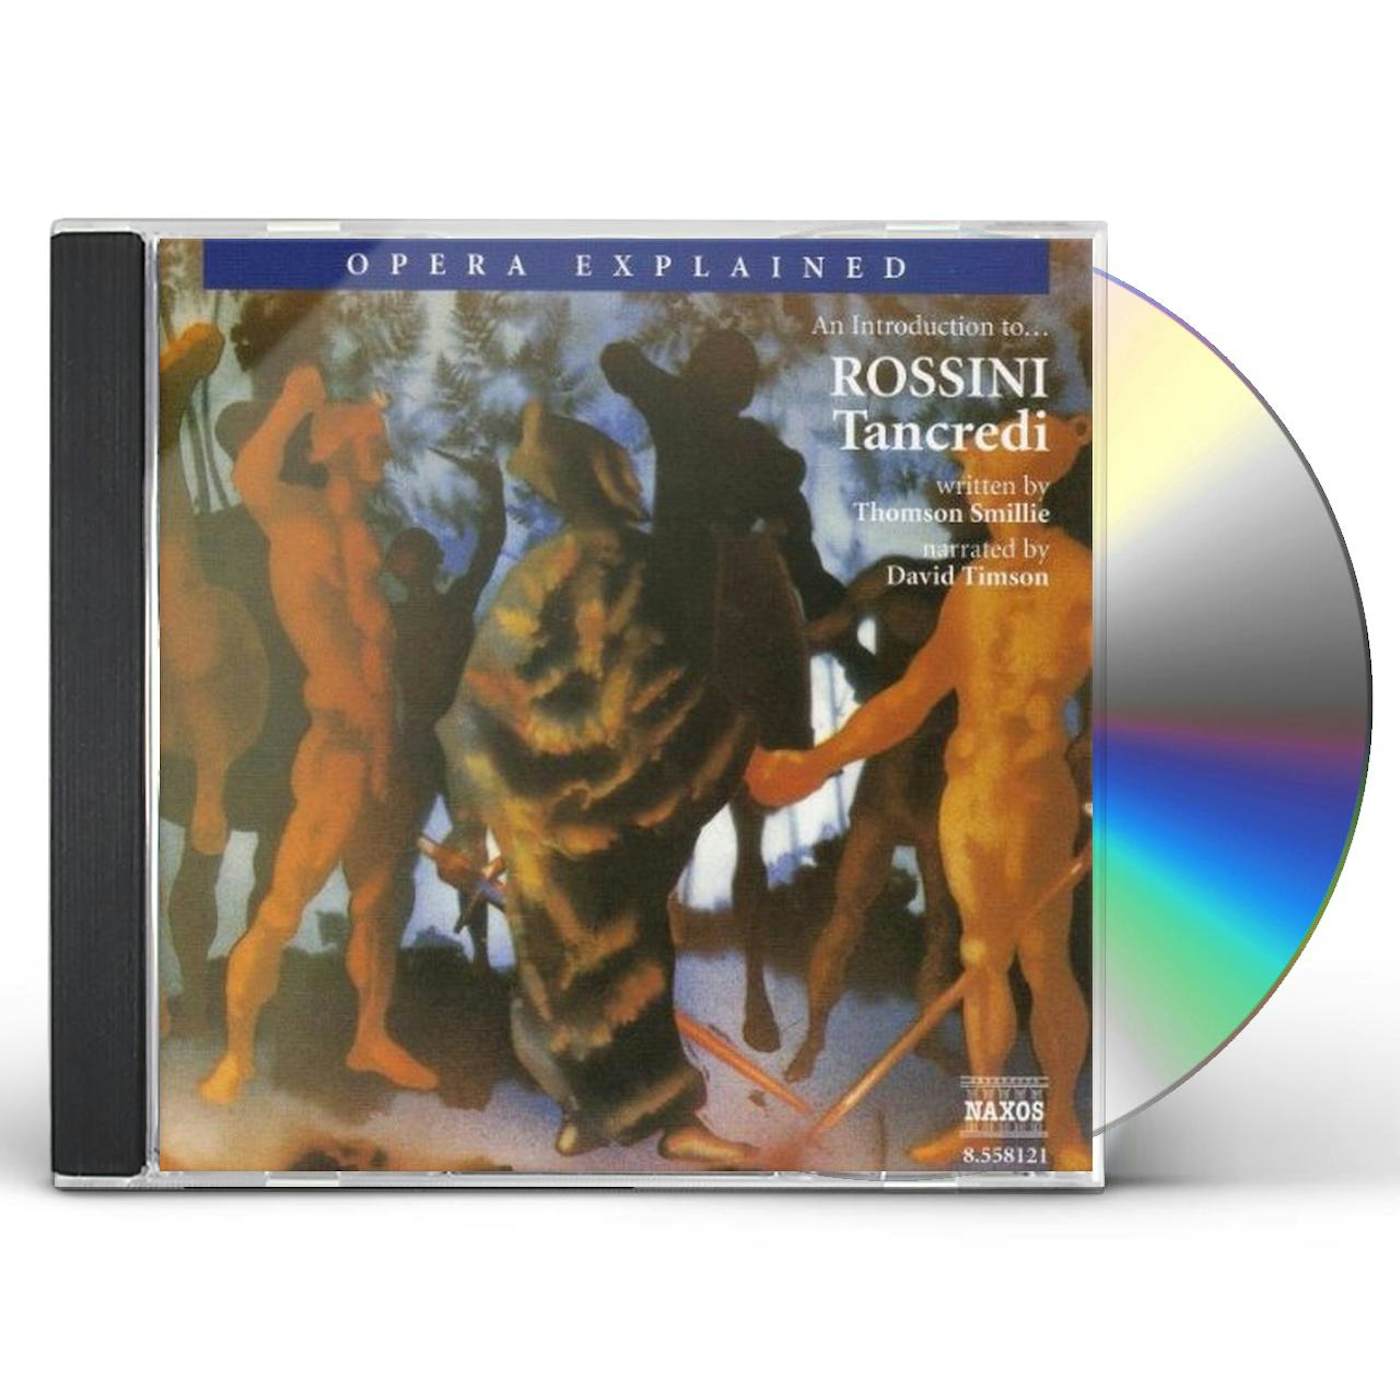 Rossini TANCREDI: OPERA EXPLAINED CD